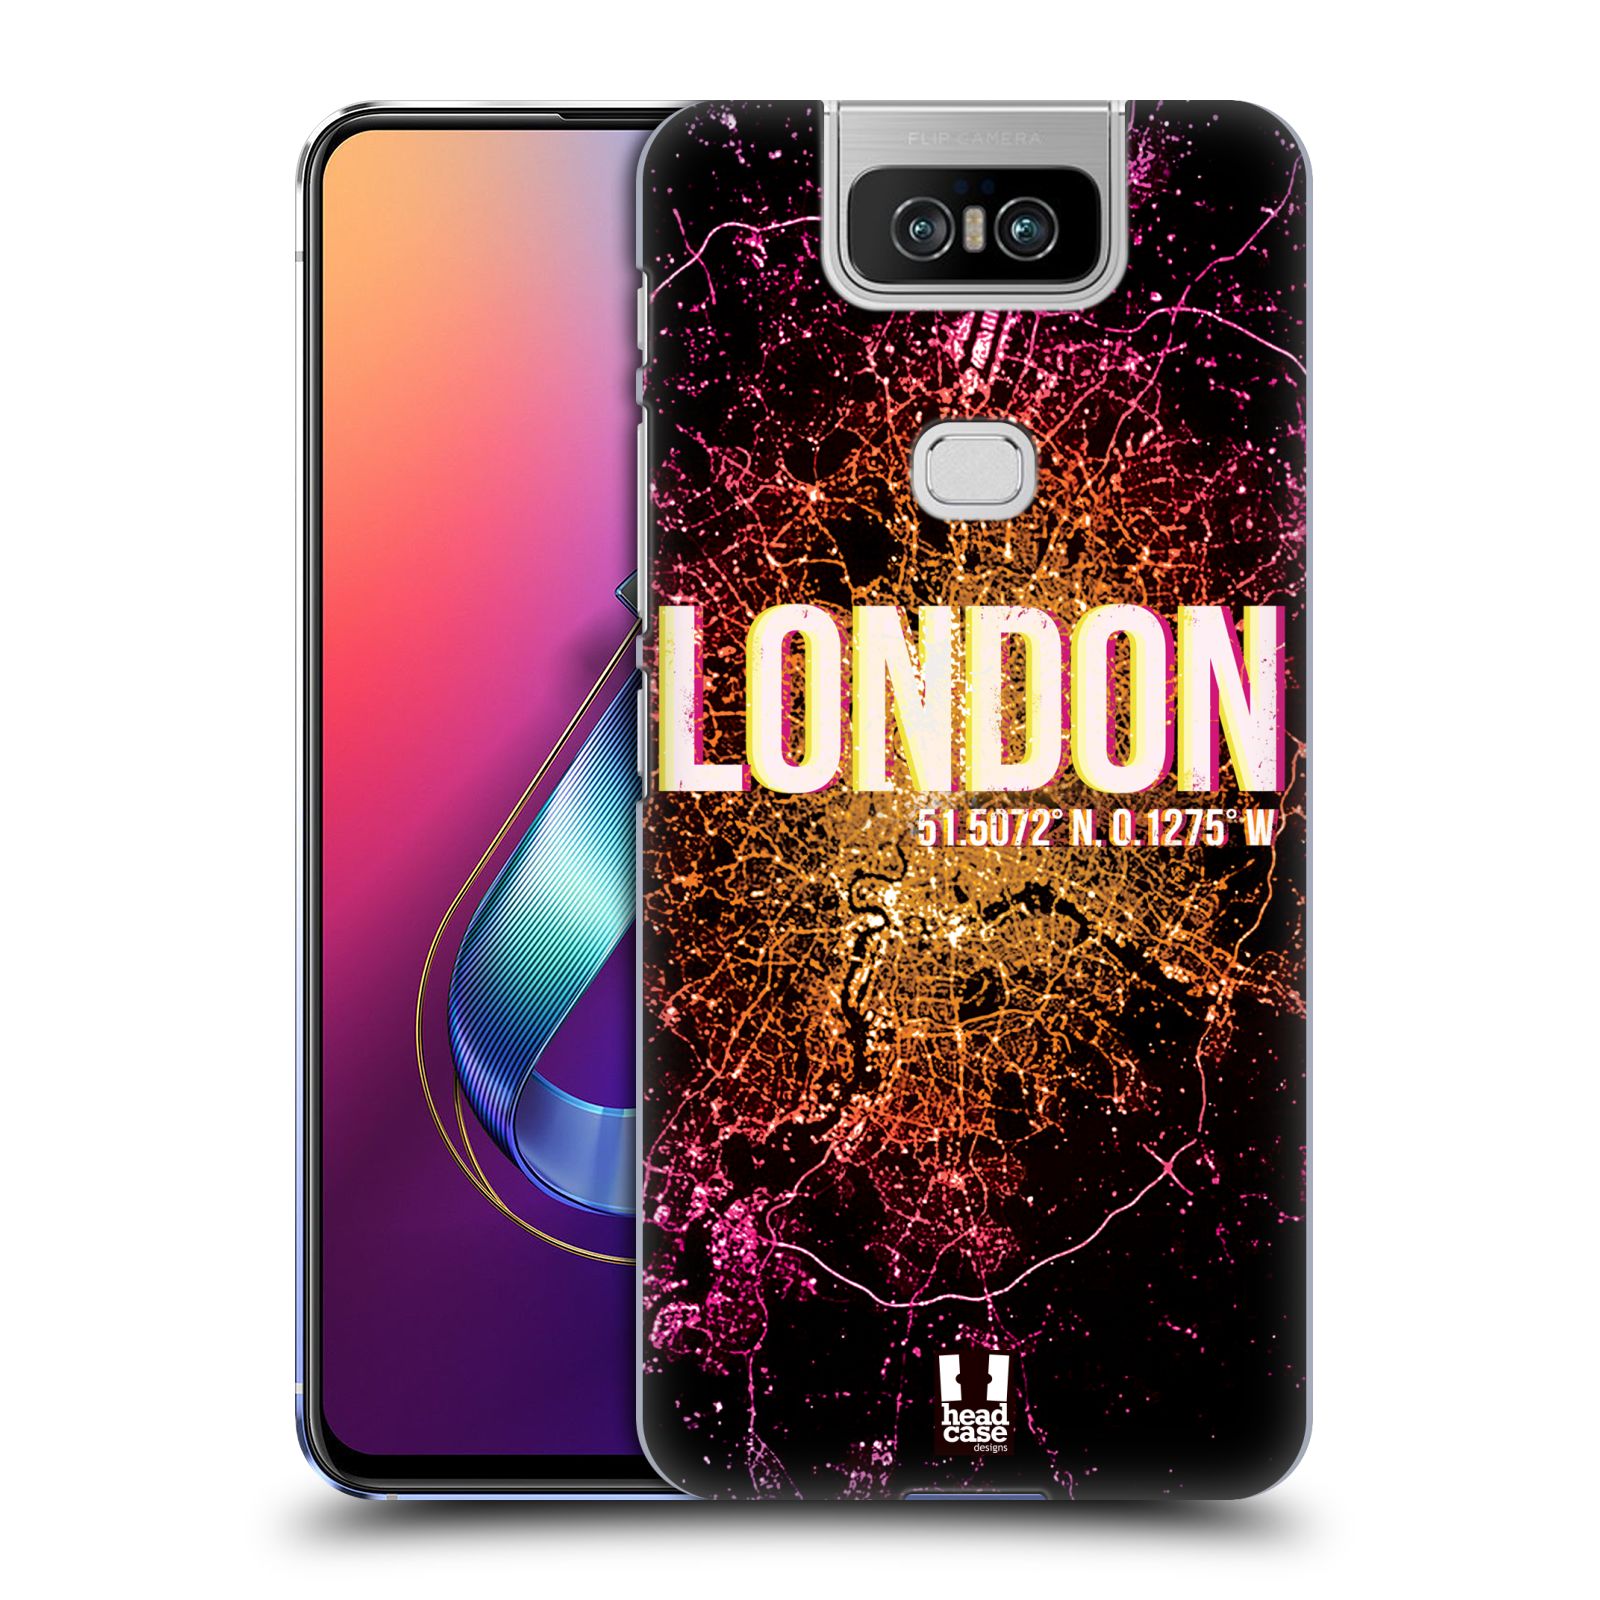 Pouzdro na mobil Asus Zenfone 6 ZS630KL - HEAD CASE - vzor Světla známých měst, Satelitní snímky ANGLIE, LONDÝN